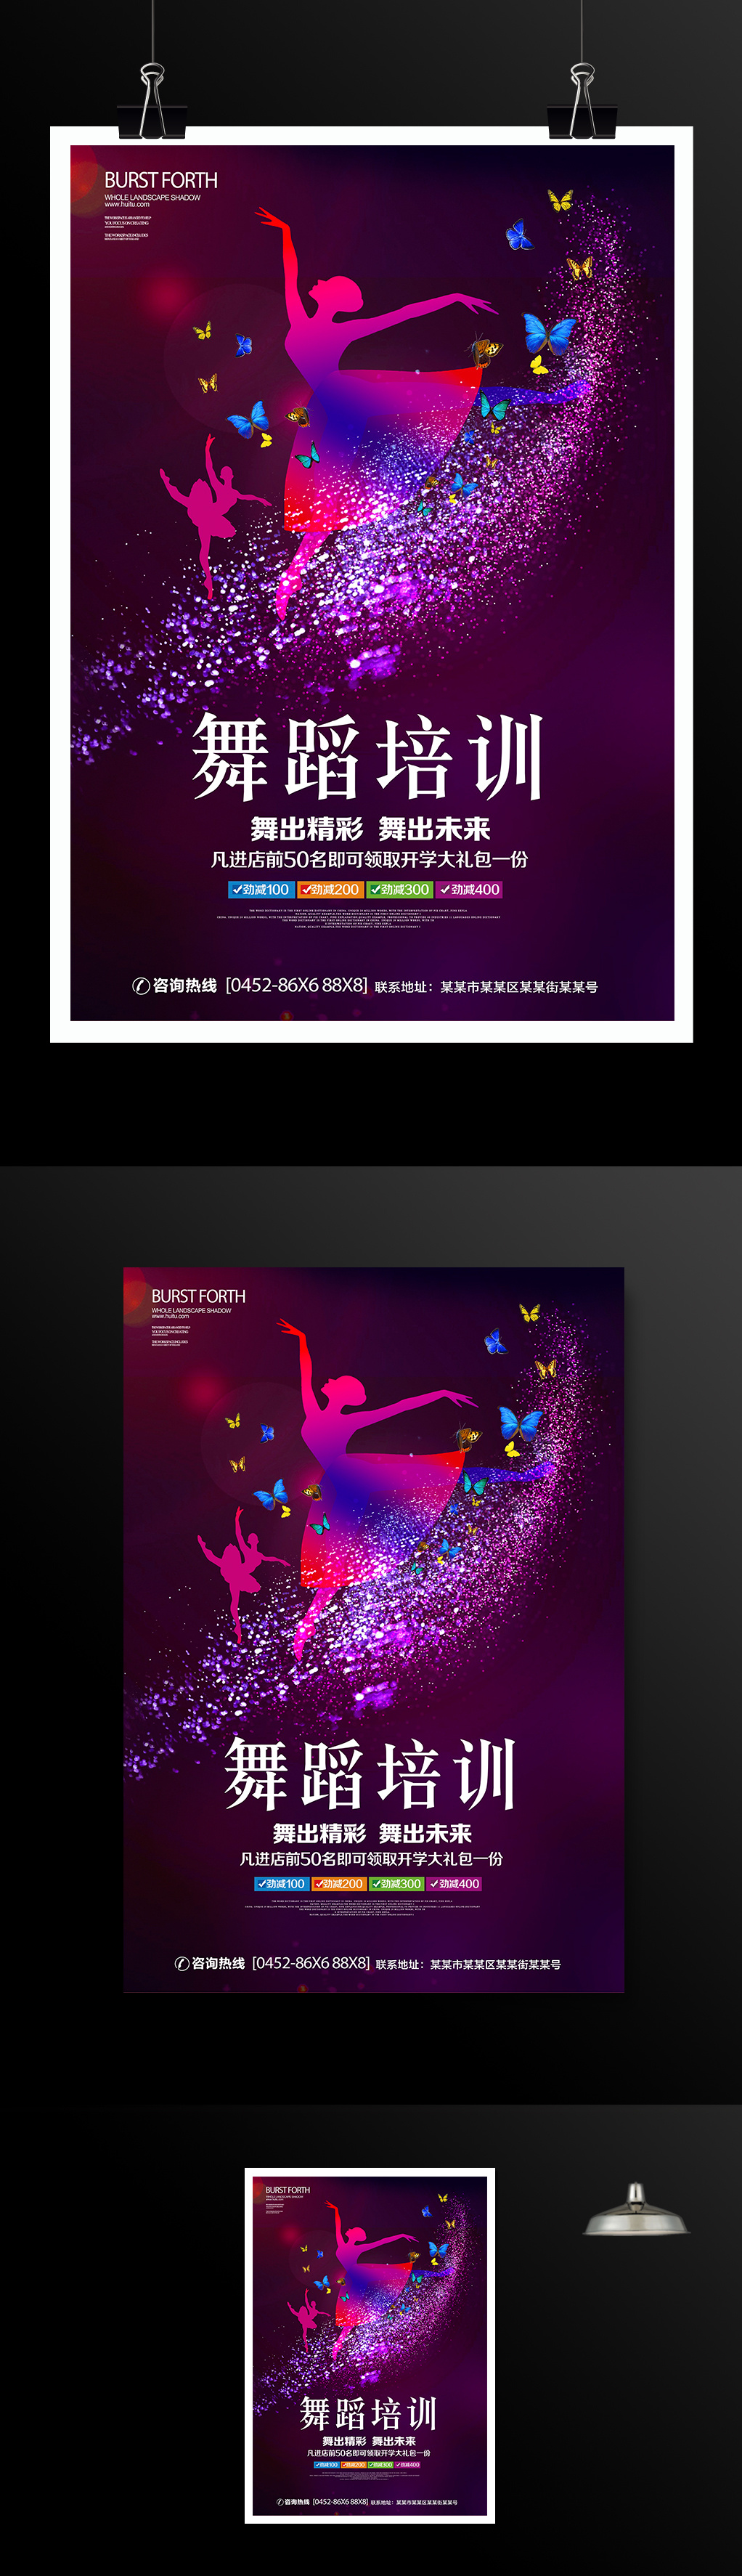 紫色炫彩舞蹈培训火热招生中宣传海报设计